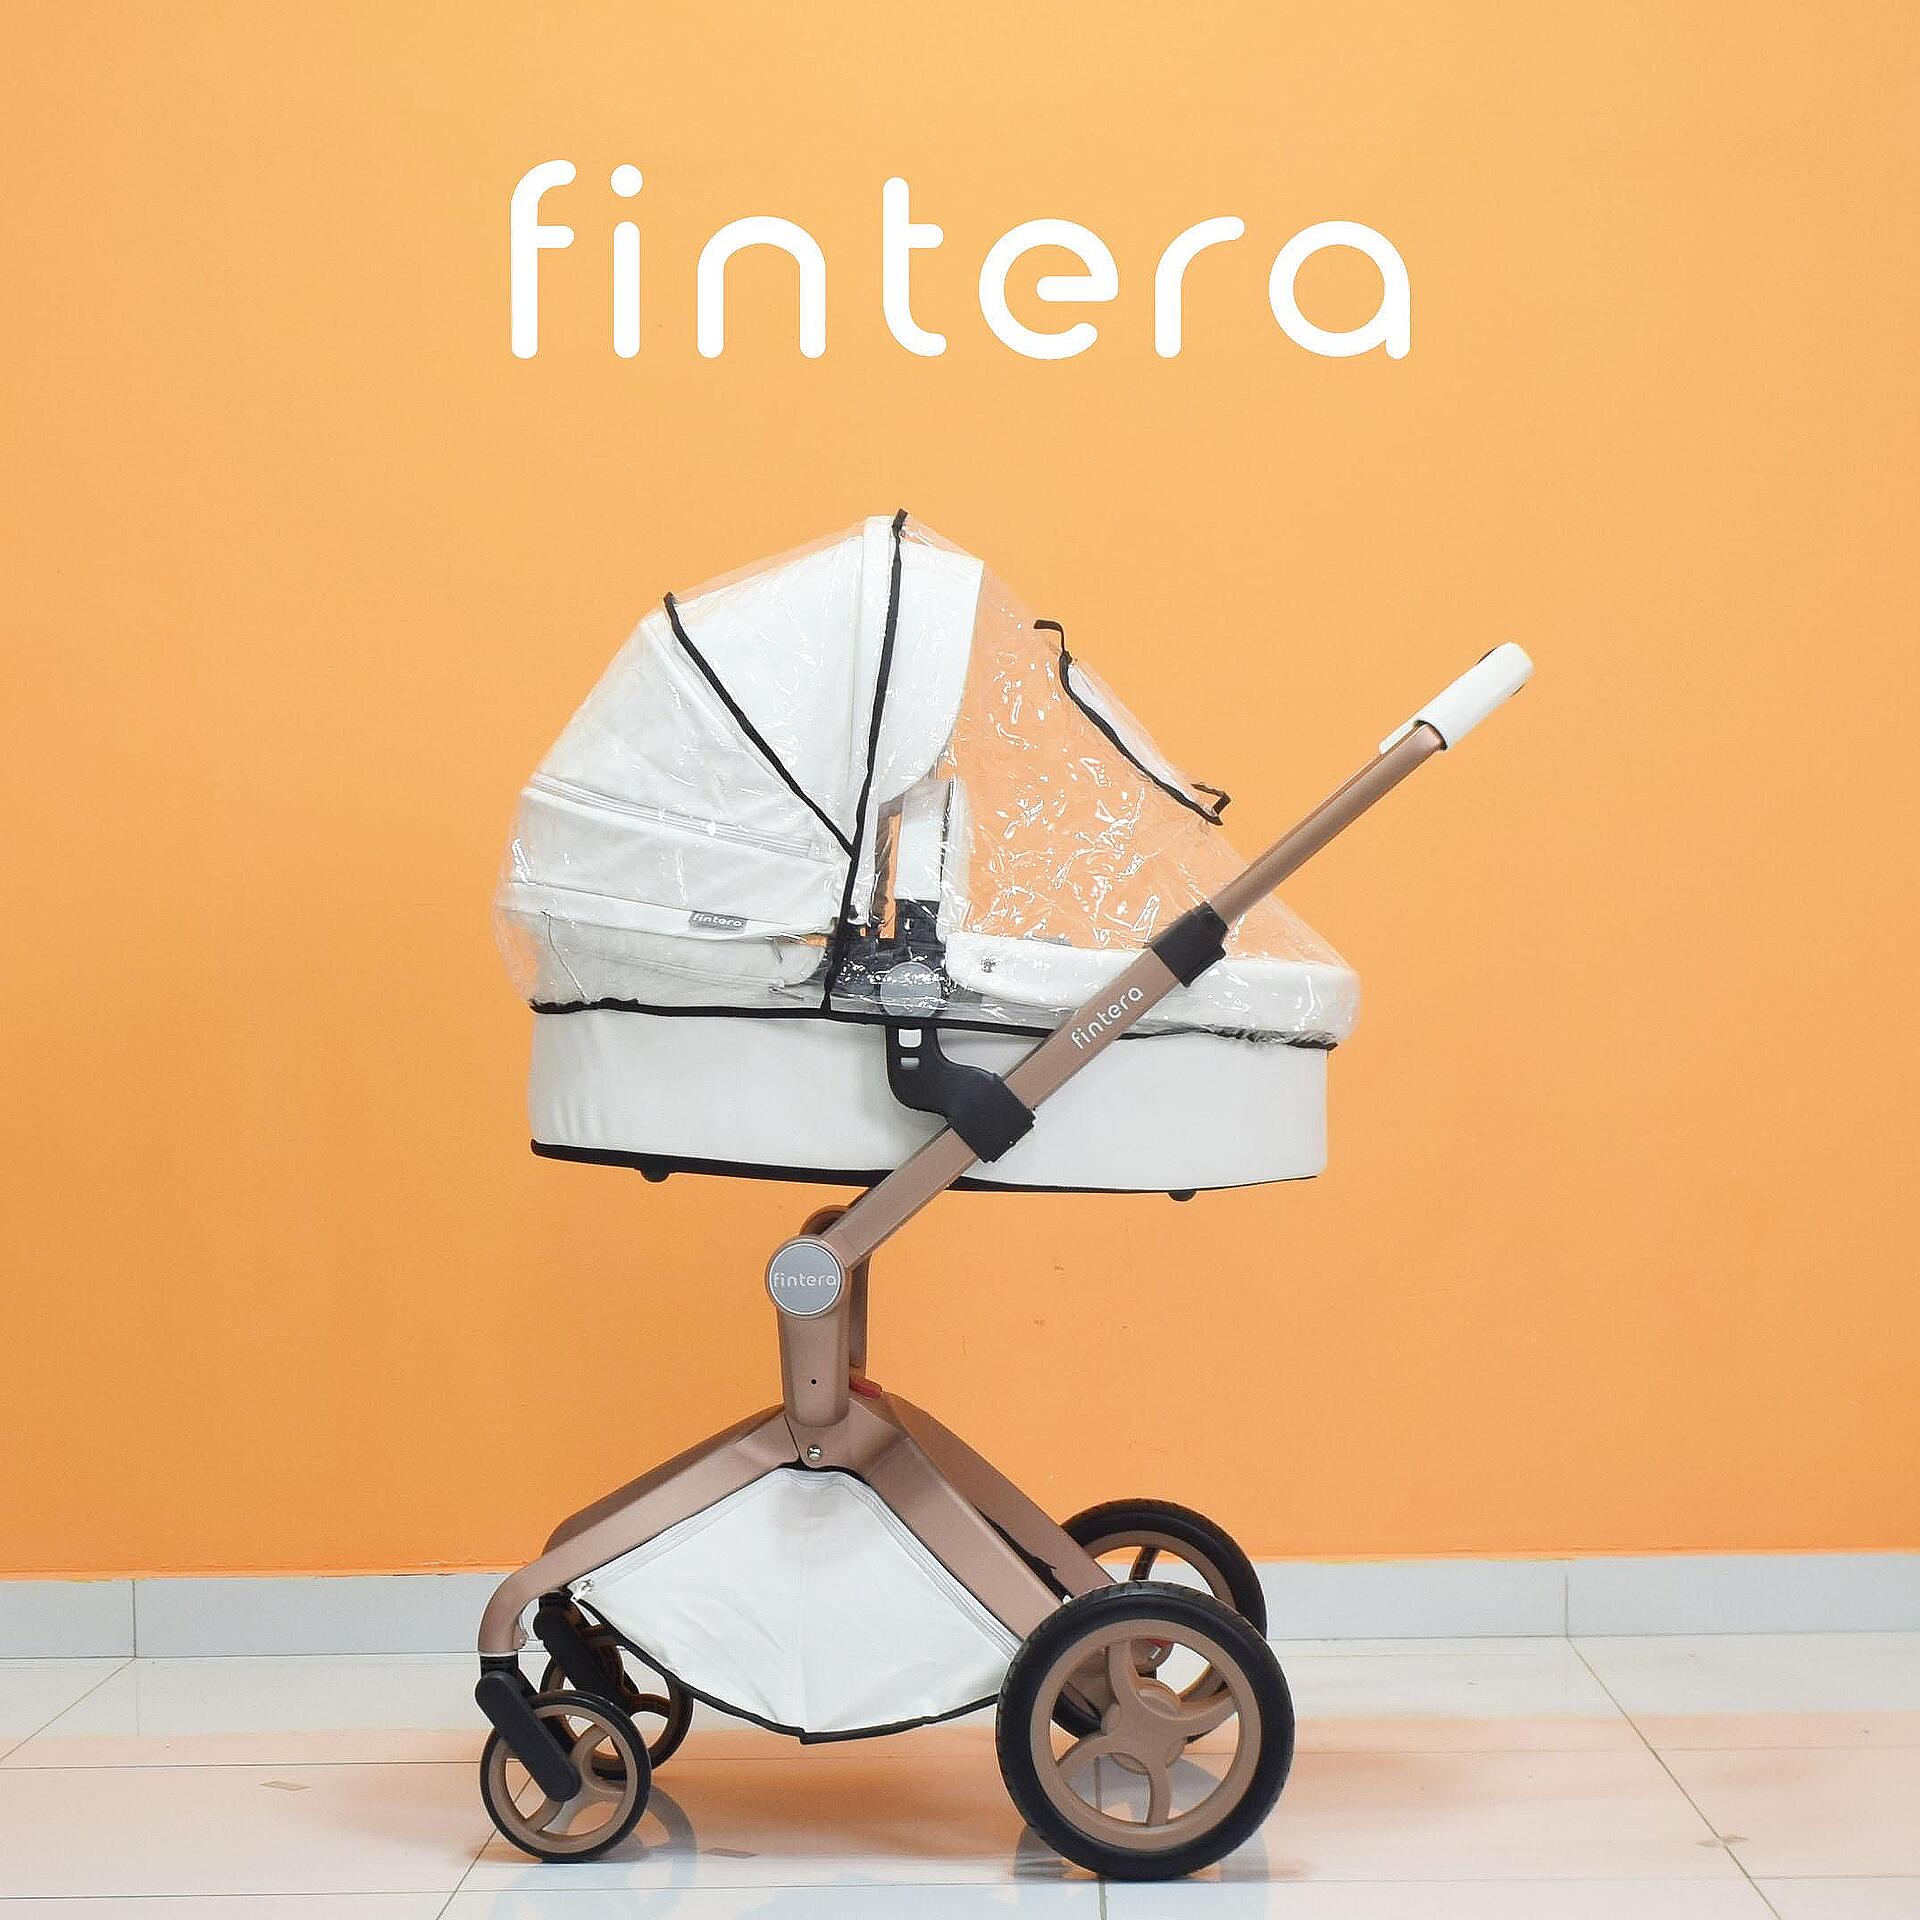 Бебешка количка Fintera Deluxe, Модел 2 в 1, Еко кожа в бял цвят + Подарък чанта, дъждобран и комарник